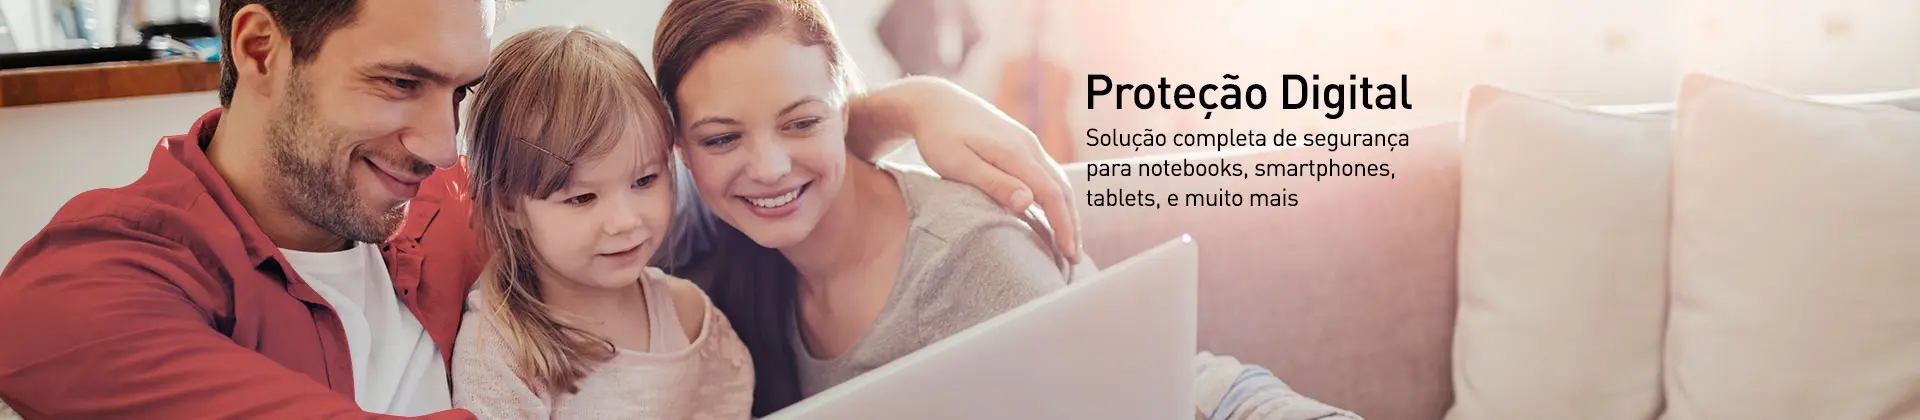 Proteção Digital - Solução completa de segurança para computadores, notebooks, tablet, smarthphones e muito mais